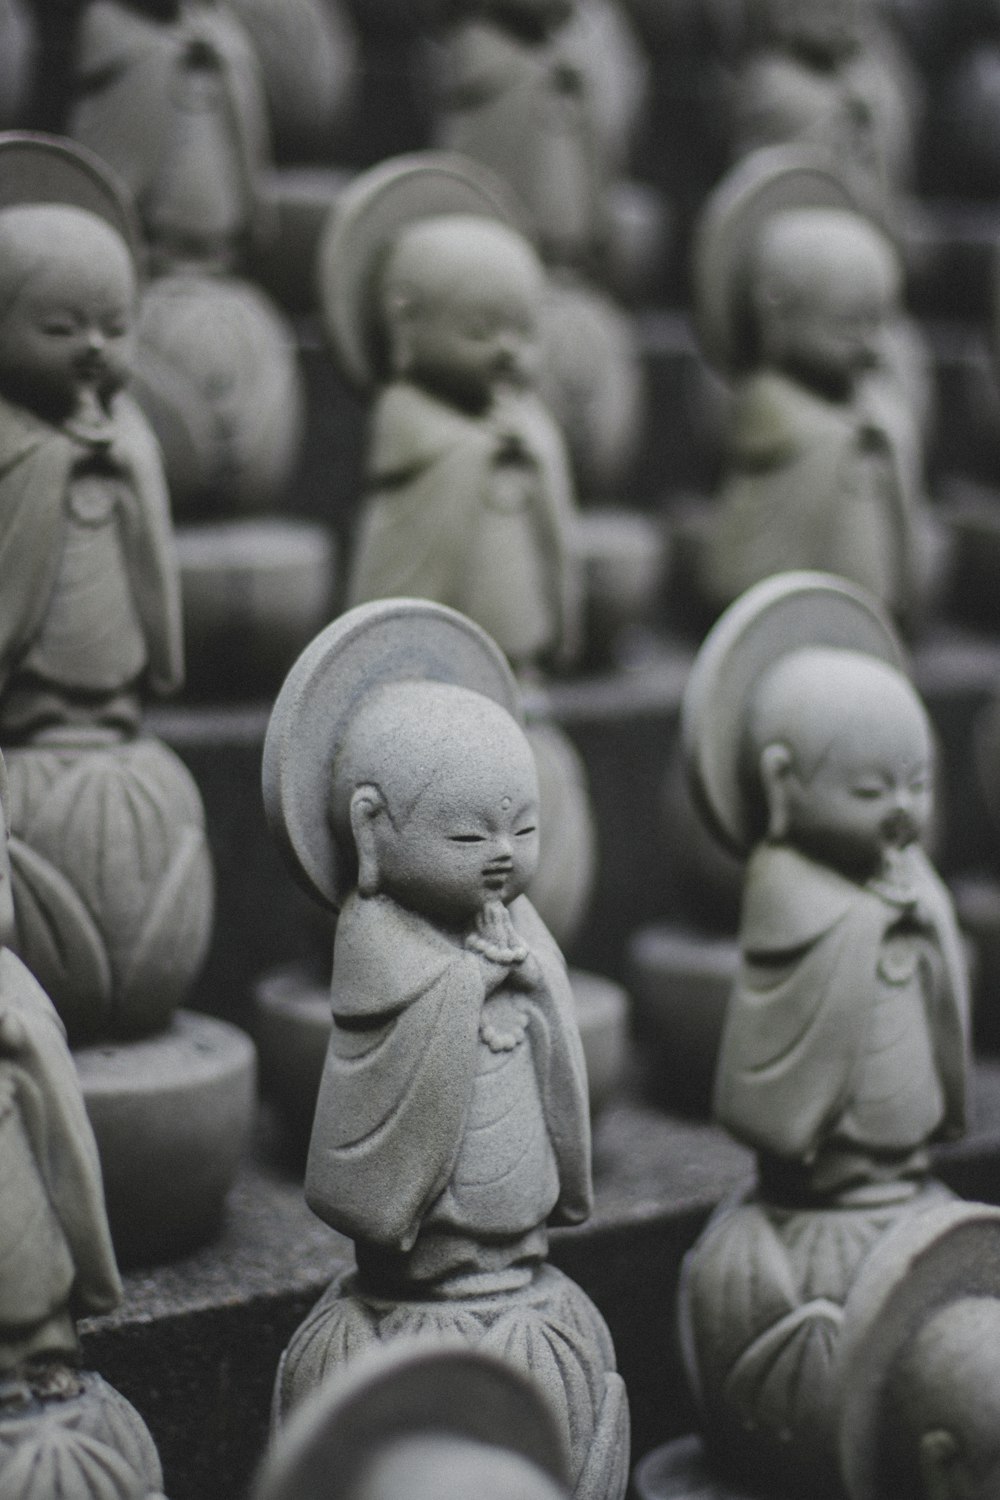 Un grupo de estatuas de Buda sentadas una al lado de la otra